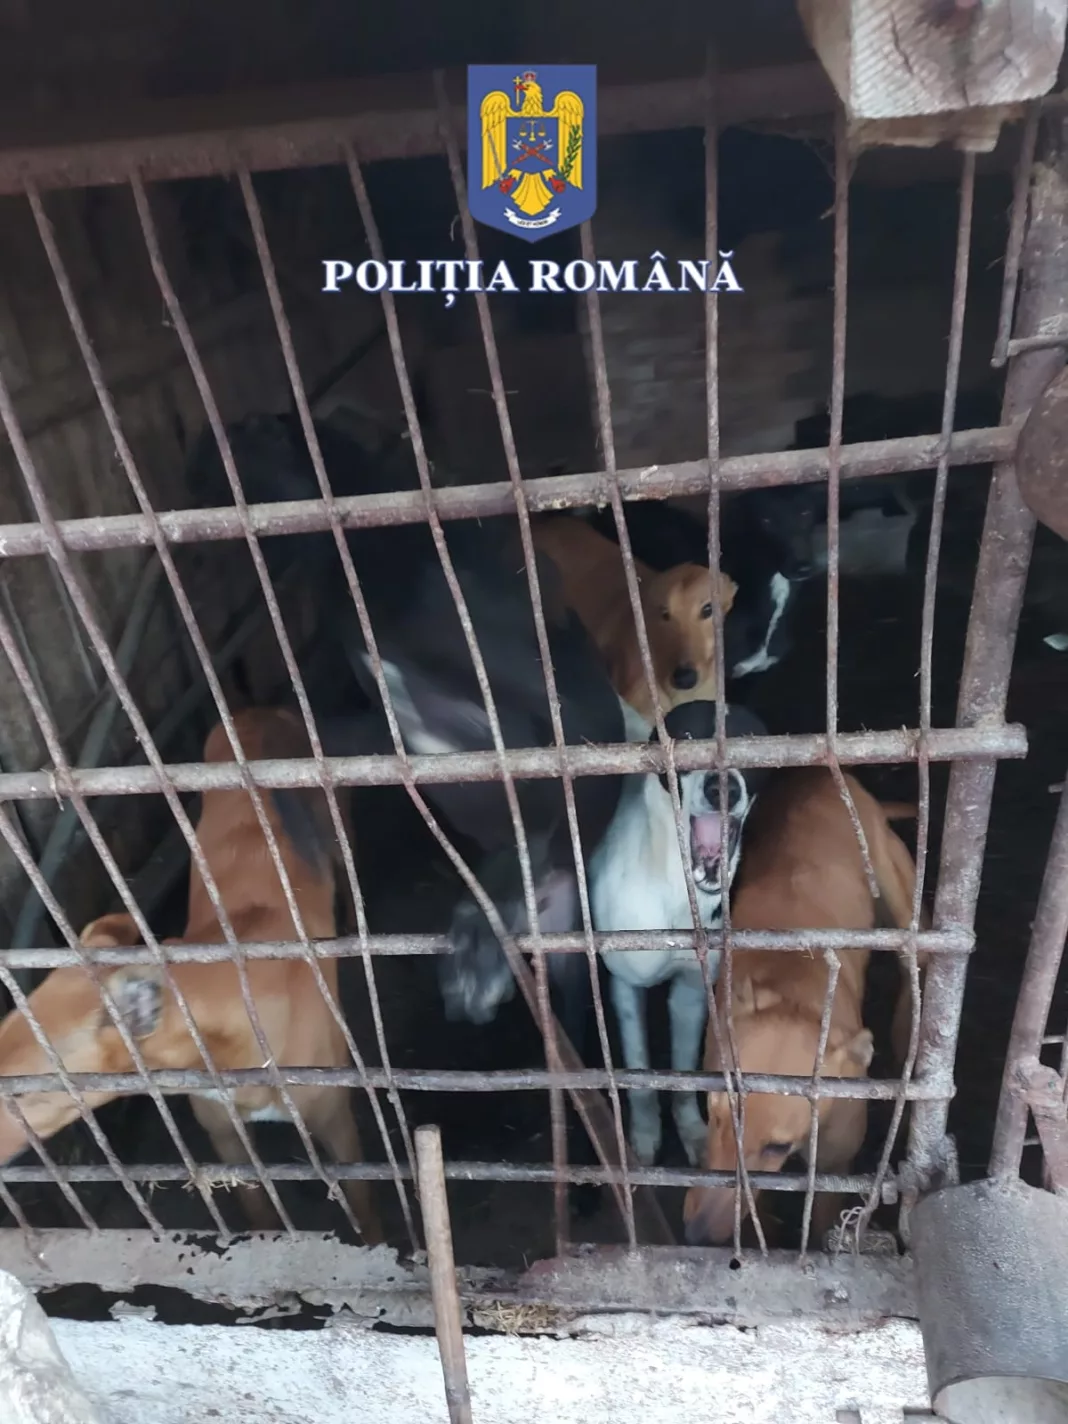 25 de câini din rasa ogar au fost încredințați asociațiilor de vânătoare care gestionează fondurile cinegetice vizate